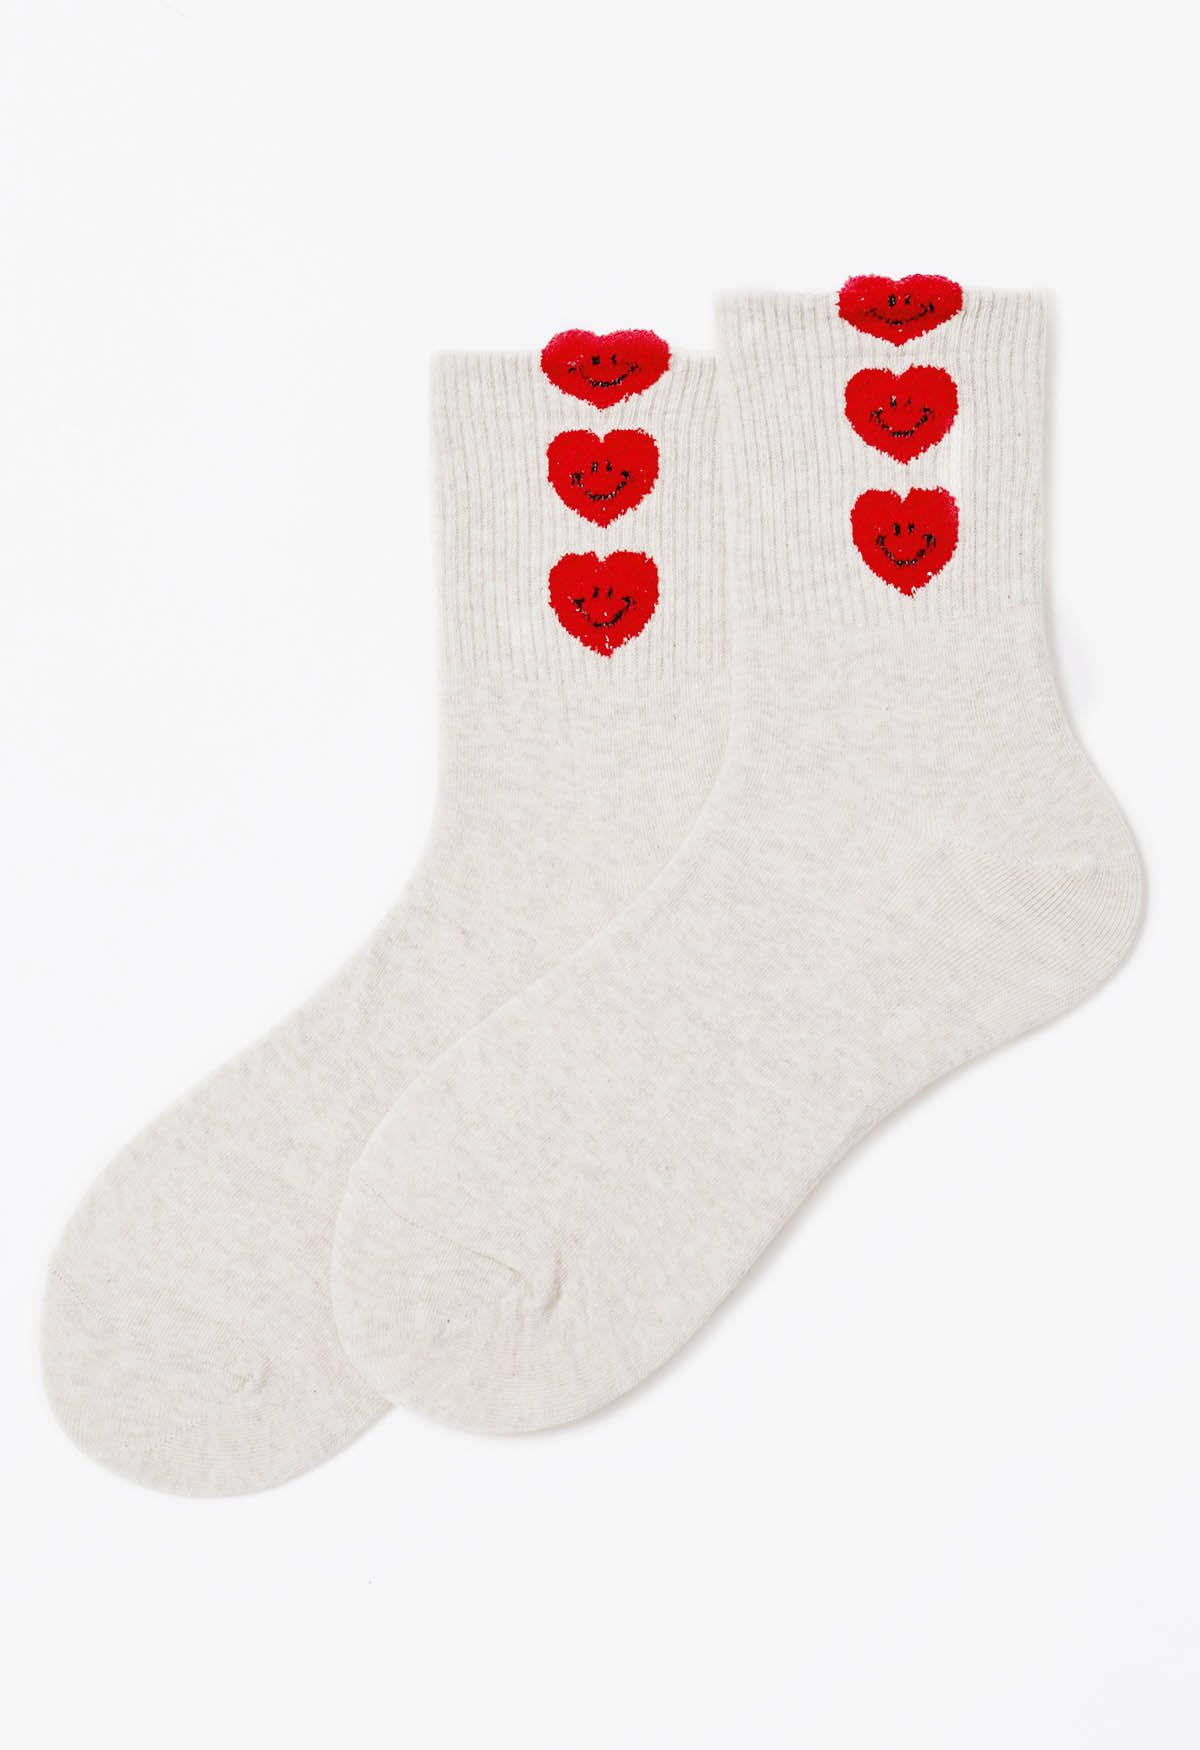 Crew-Socken aus Baumwolle mit lächelndem Gesicht und Herz